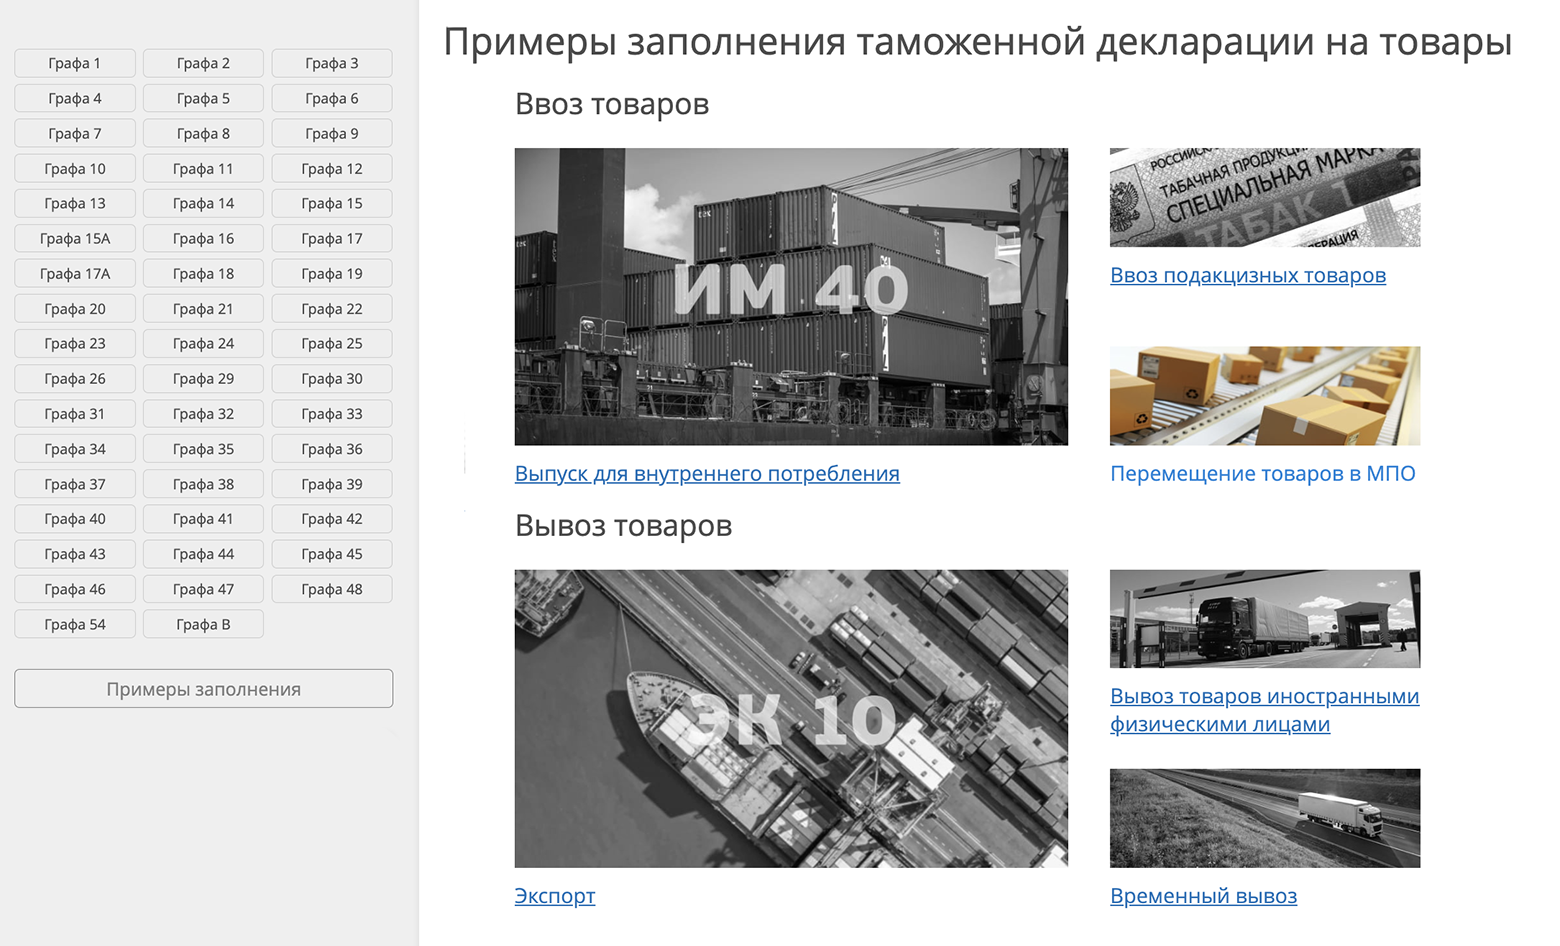 На сайте также есть примеры заполненных деклараций и пояснения к ним. Источник: alta.ru